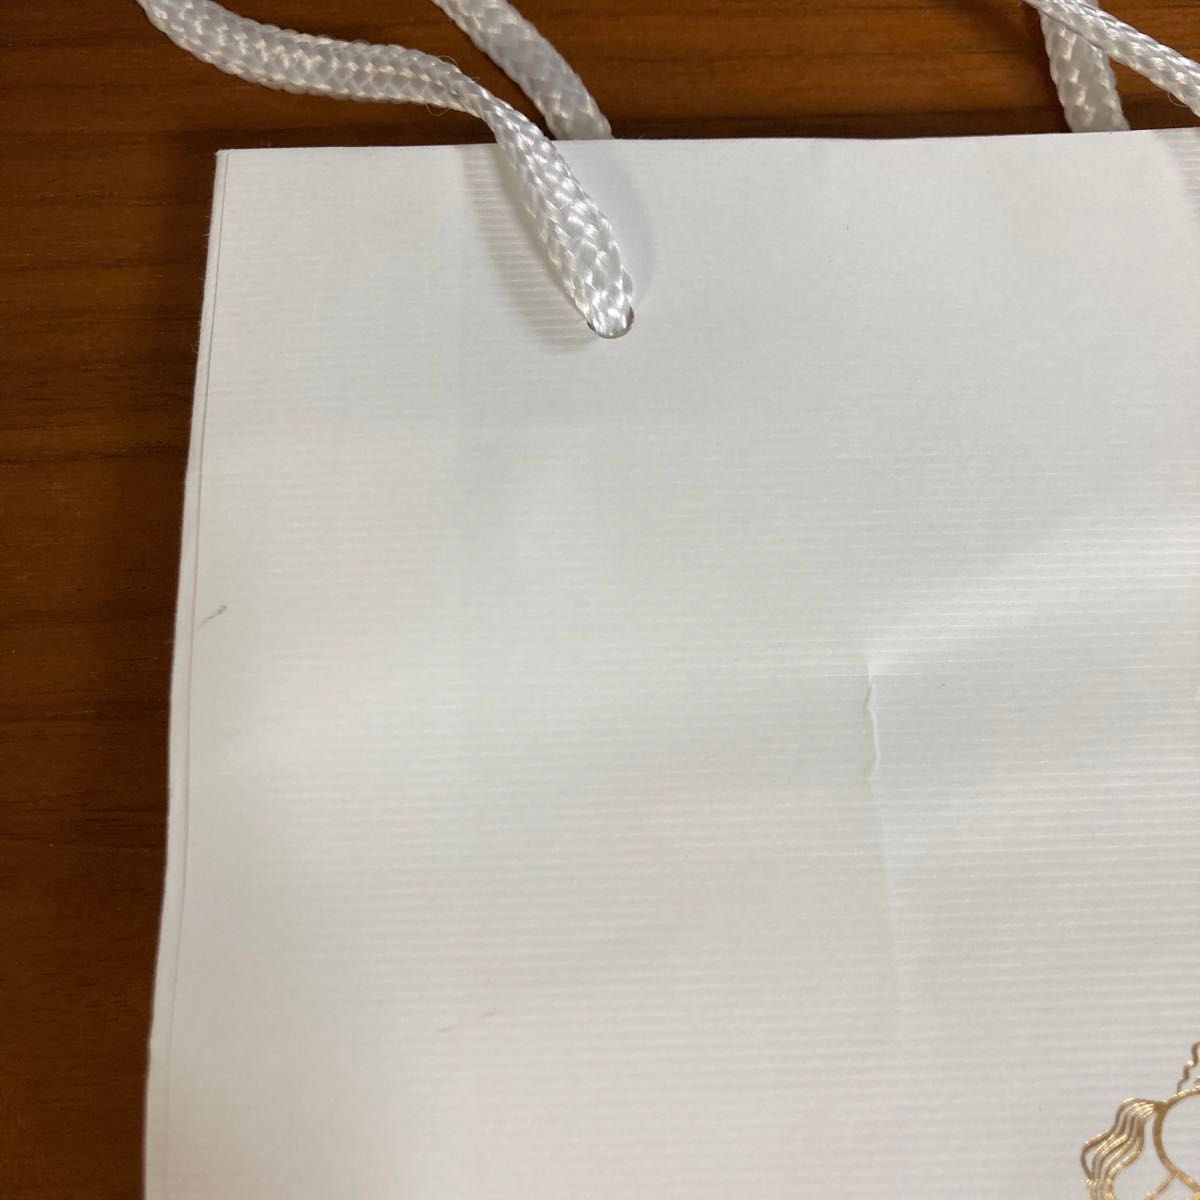 GODIVA 紙袋 バレンタイン